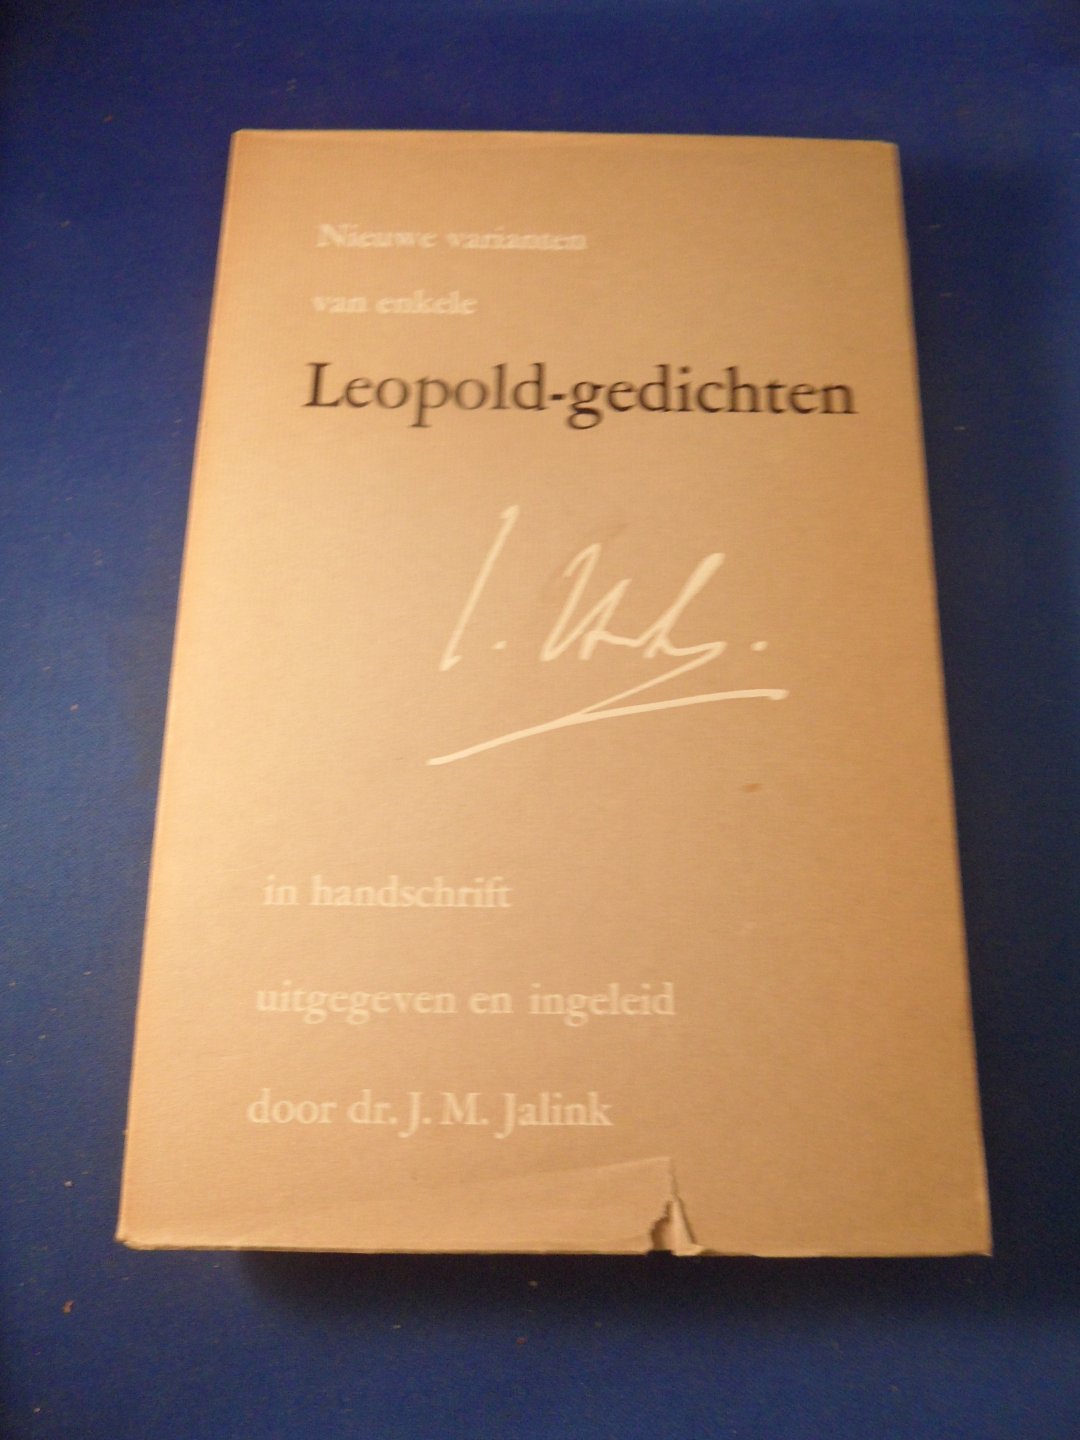 Leopold, J.H. - Nieuwe varianten van enkele Leopold-gedichten. In handschrift uitgegeven en ingeleid door dr. J.M. Jalink